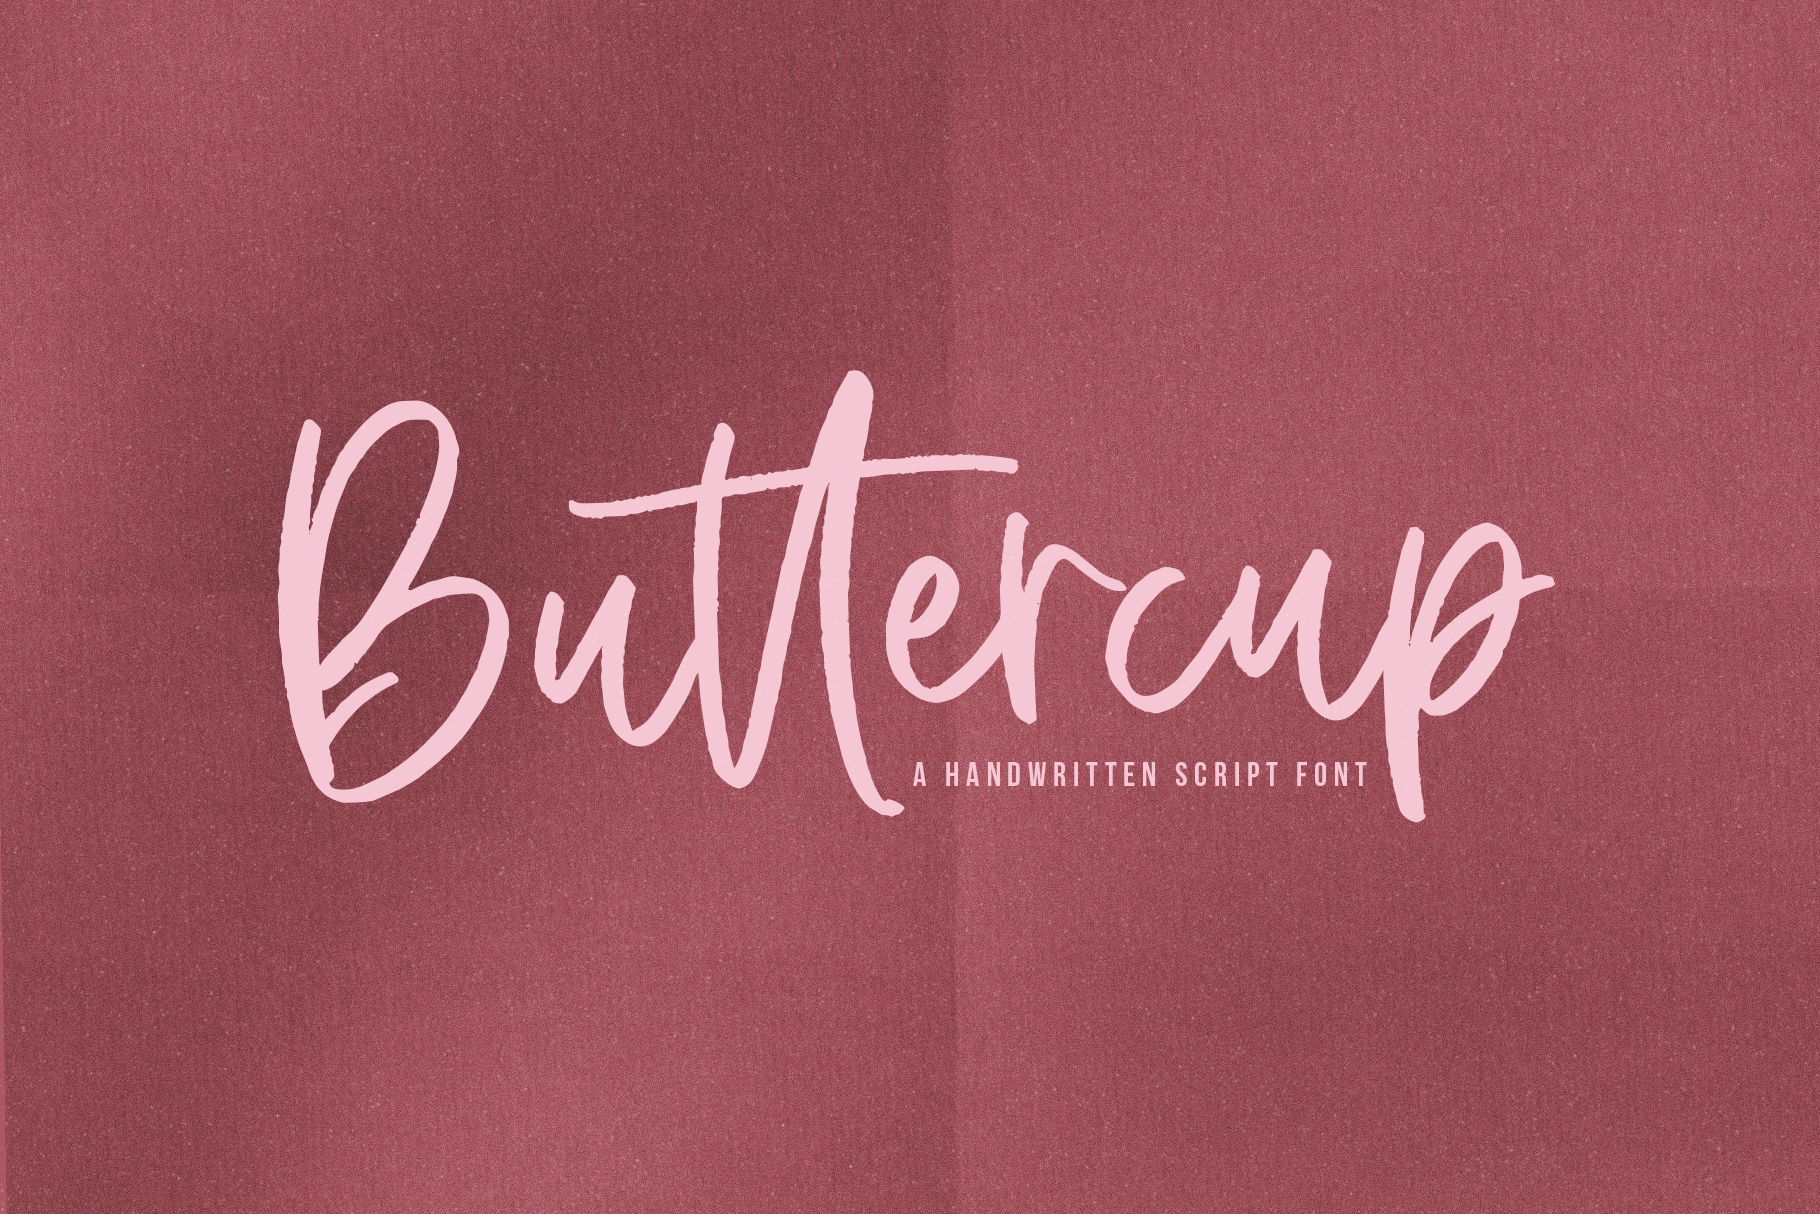 Buttercup A Handwritten Script Font By Ka Designs Thehungryjpeg Com